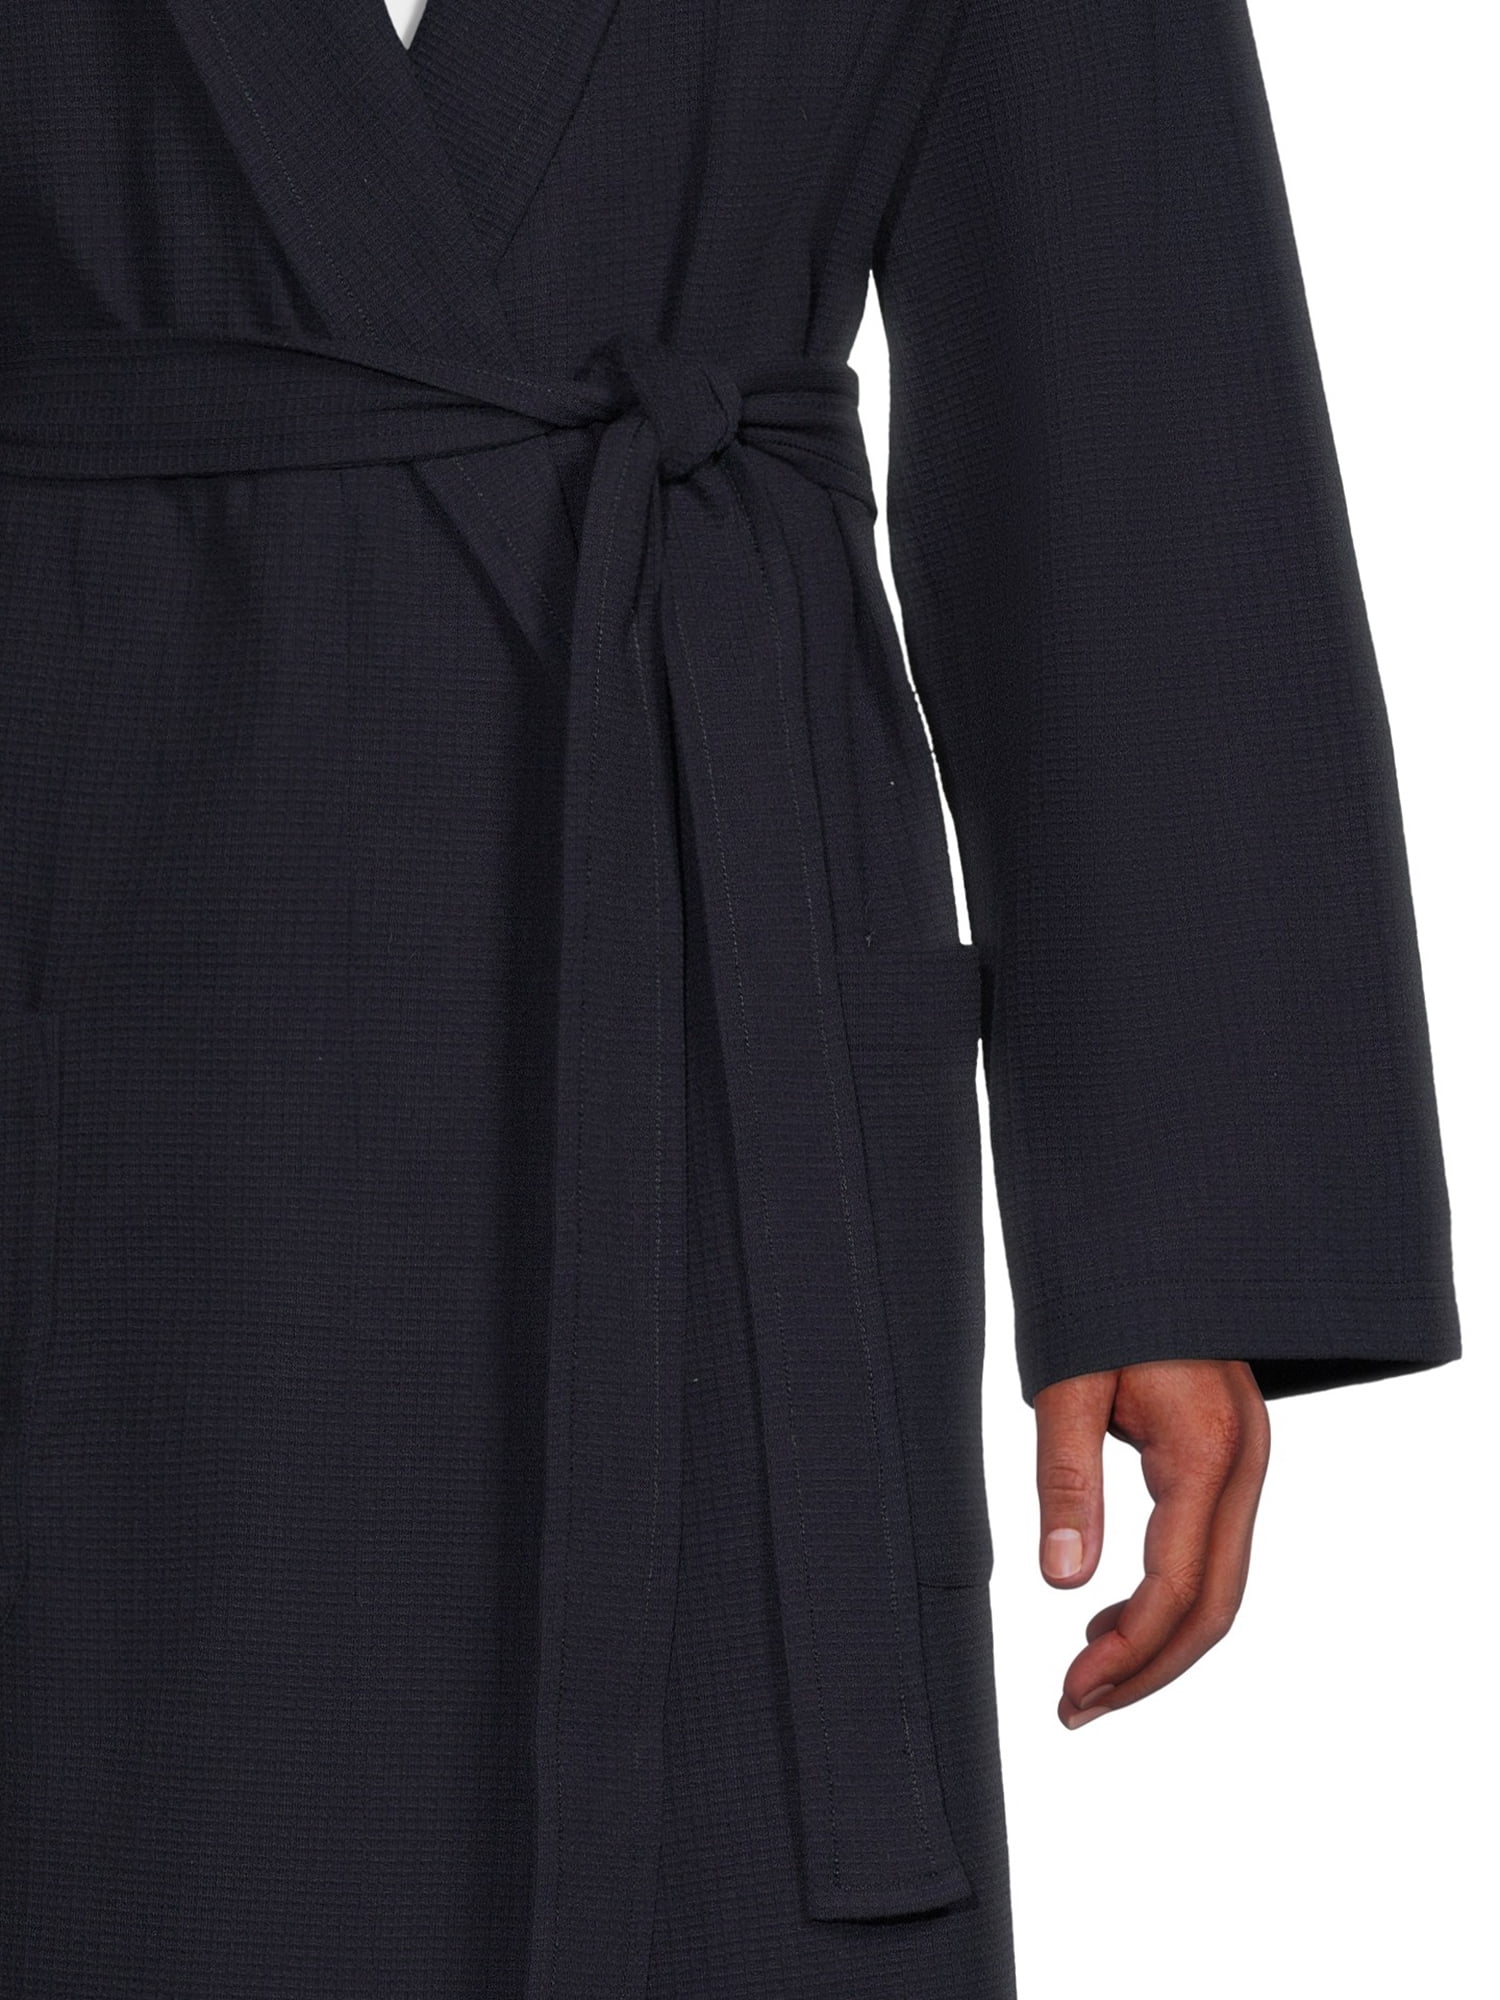 Men's Luxury Waffle Knit Robe – Plain Clothing Store